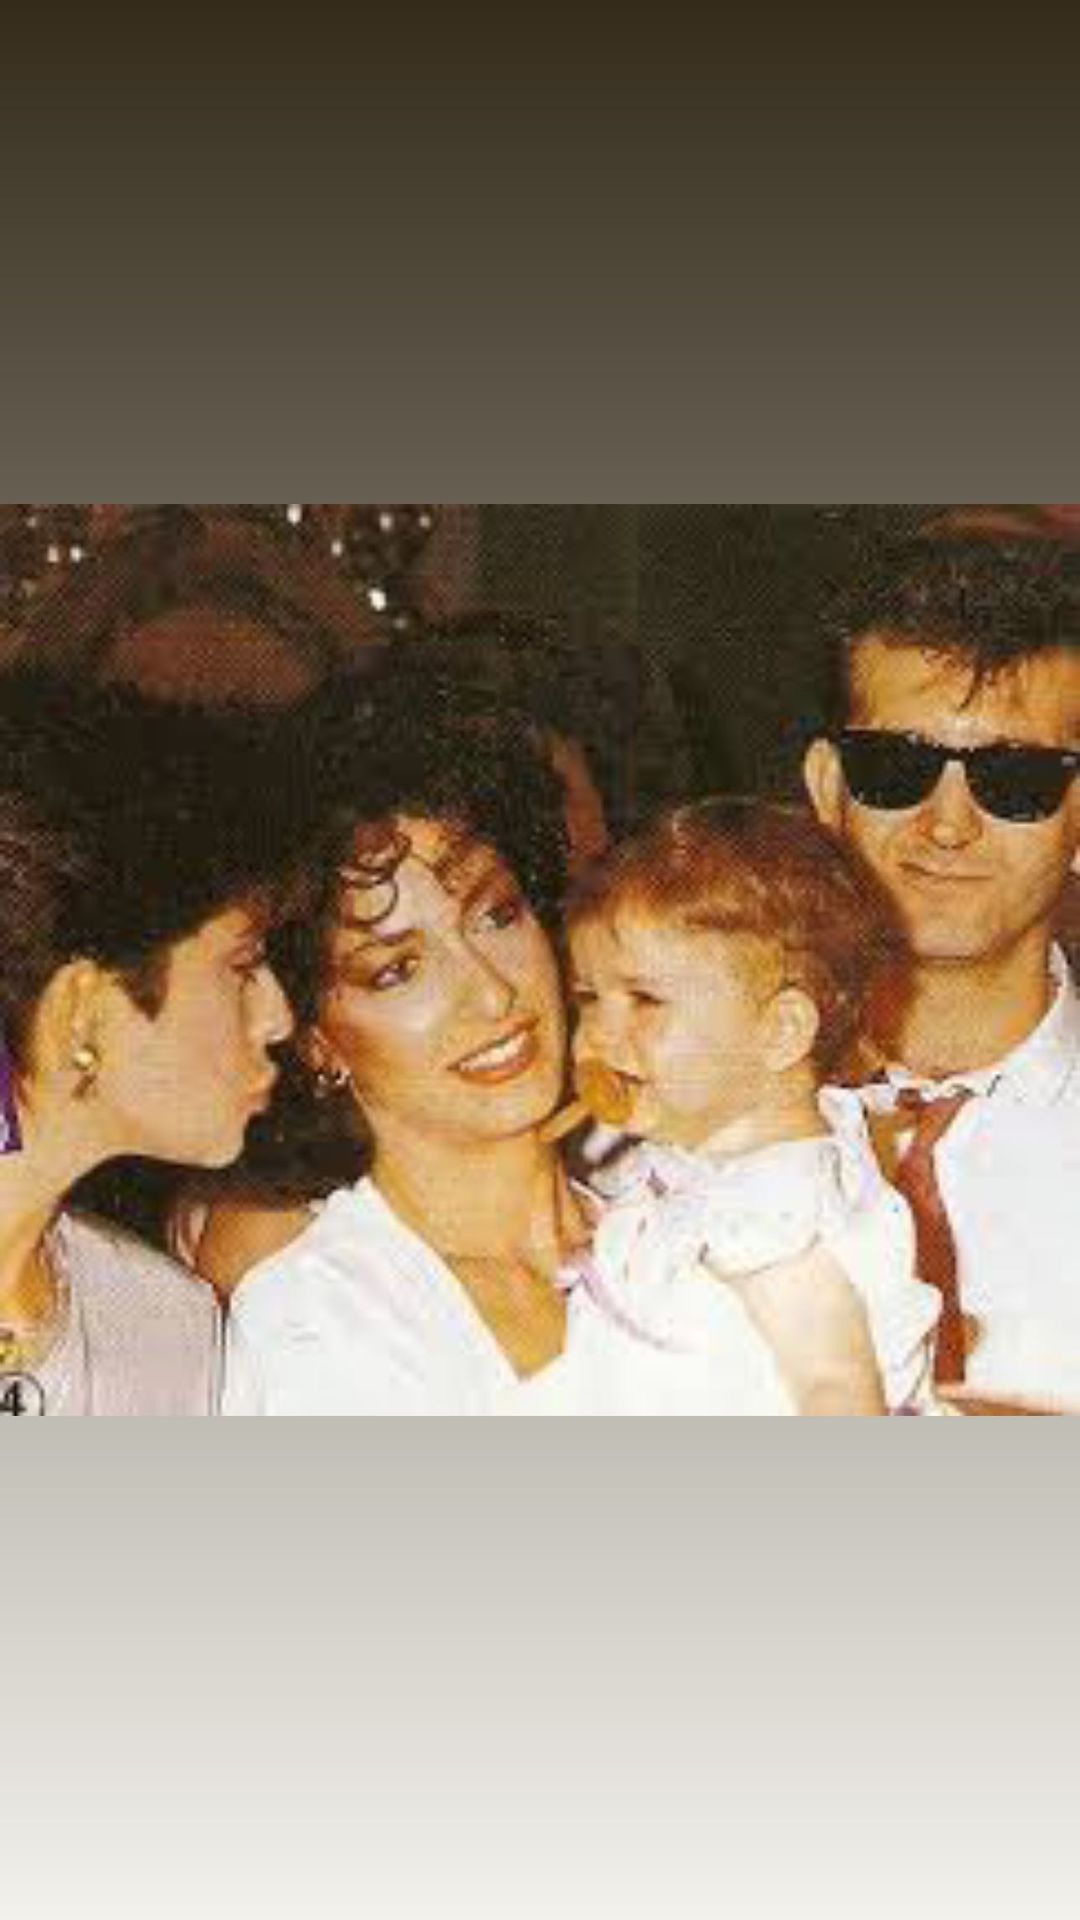 Σοφία Καρβέλα: Η τρυφερή οικογενειακή φωτογραφία με την Άννα Βίσση και τον  Νίκο Καρβέλα - InStyle